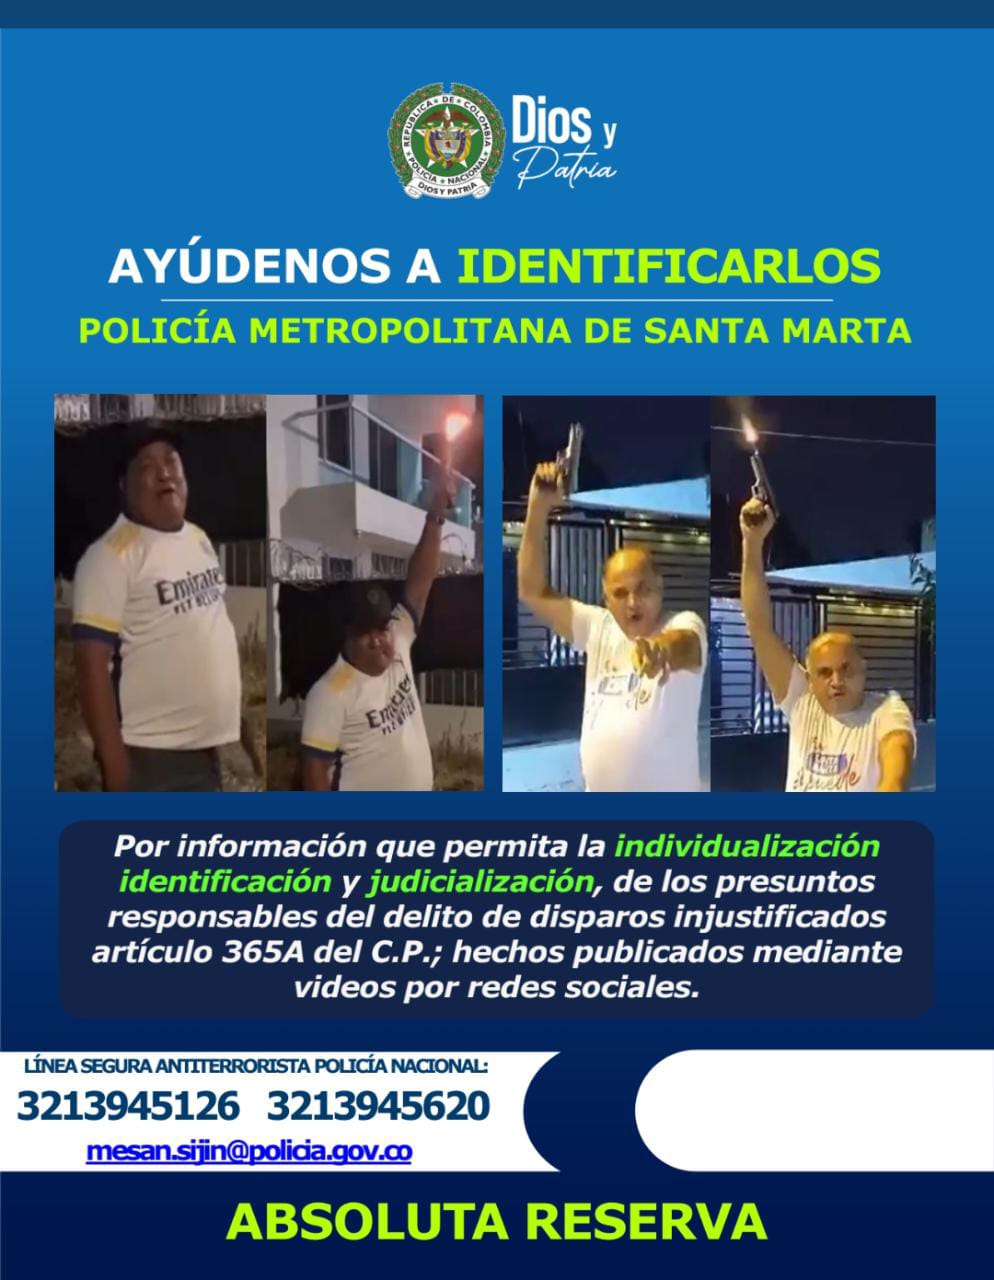 Comunicado entregado por la Policía Metropolitana de Santa Marta.